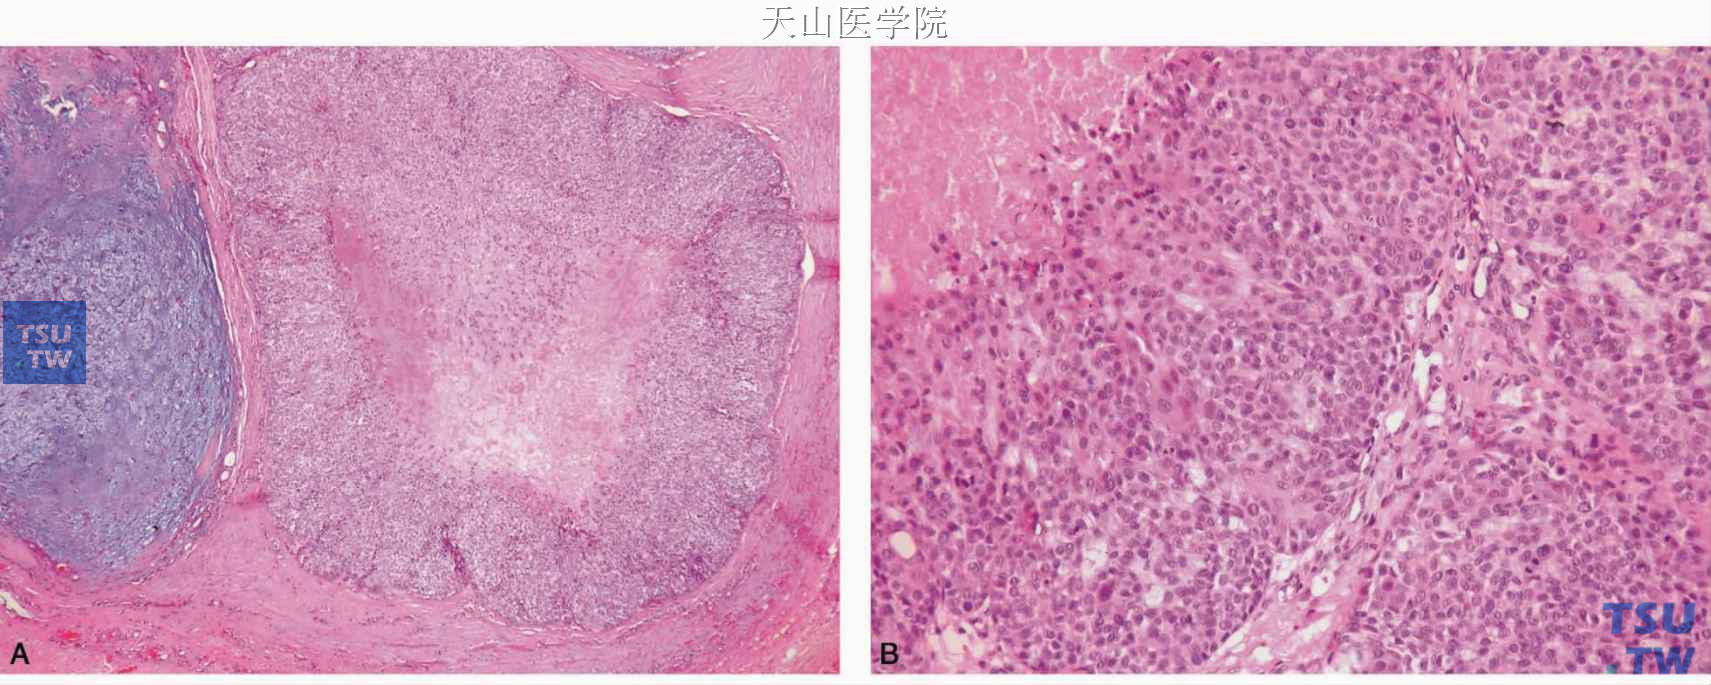 多形性腺瘤癌变 A.癌变成分为肌上皮癌，位于图右侧；B.高倍镜下见肿瘤组织坏死及肿瘤细胞核分裂